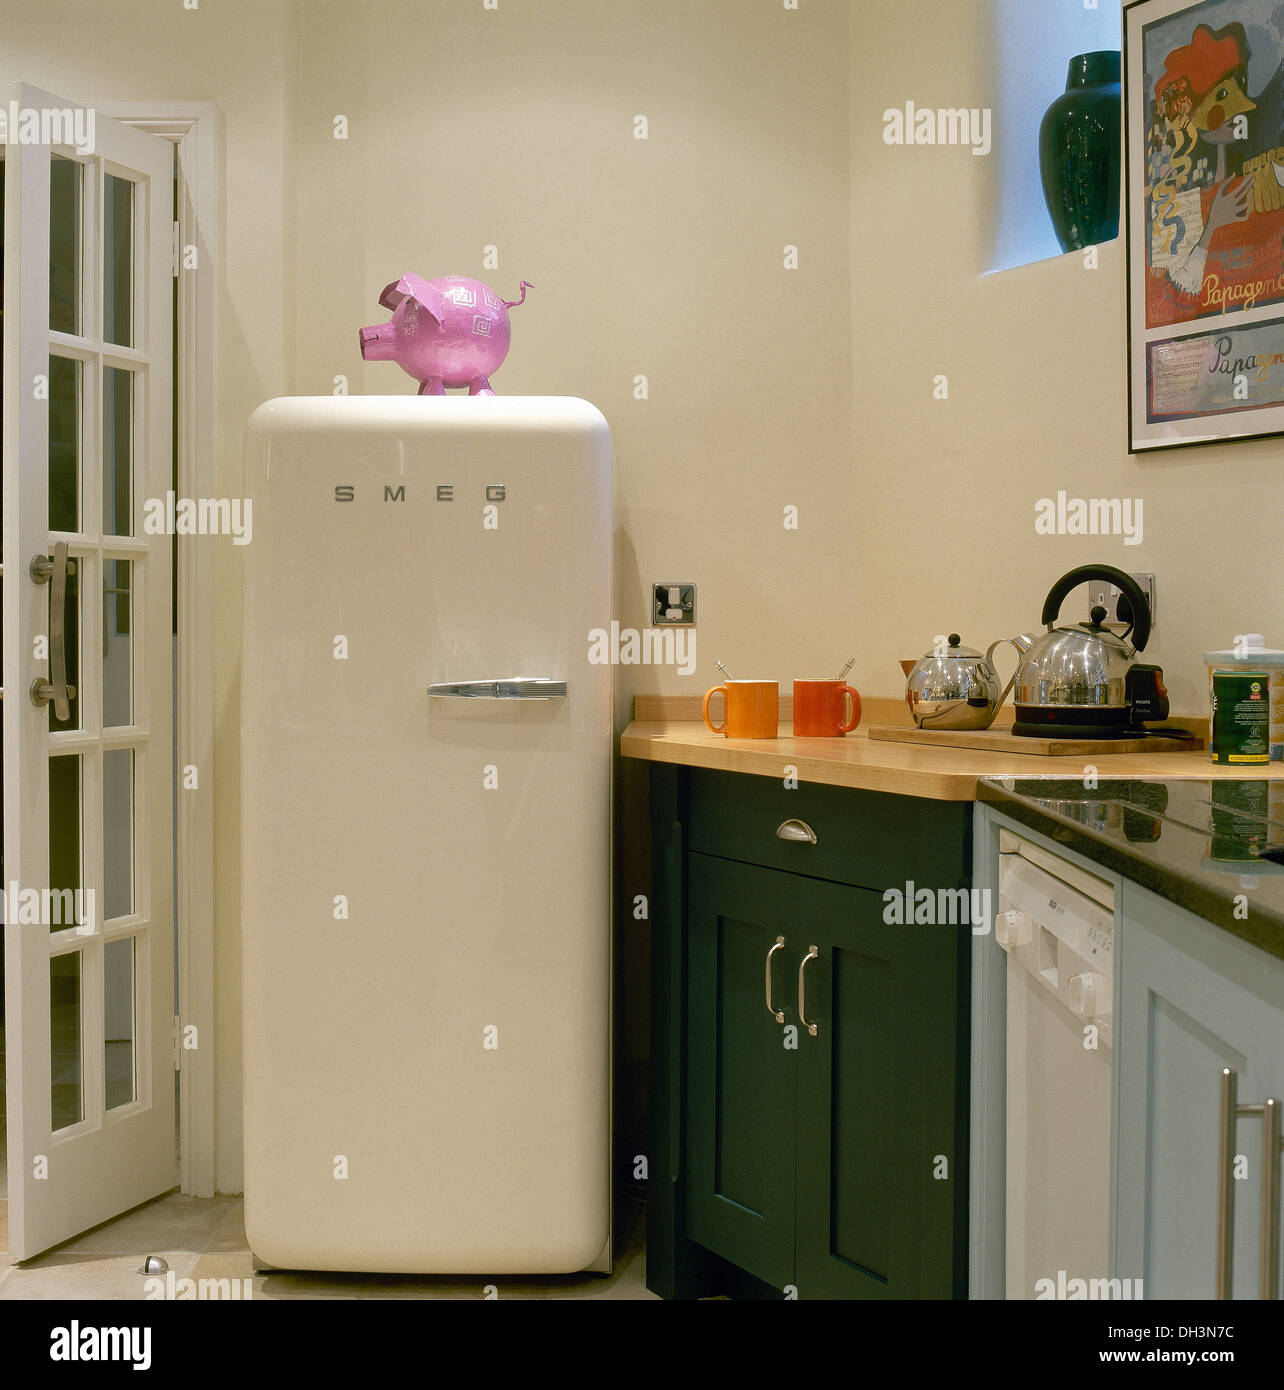 Rosa rosa in plastica su Smeg frigorifero in un angolo della cucina moderna con acciaio inox bollitore teiera sul piano di lavoro Foto Stock